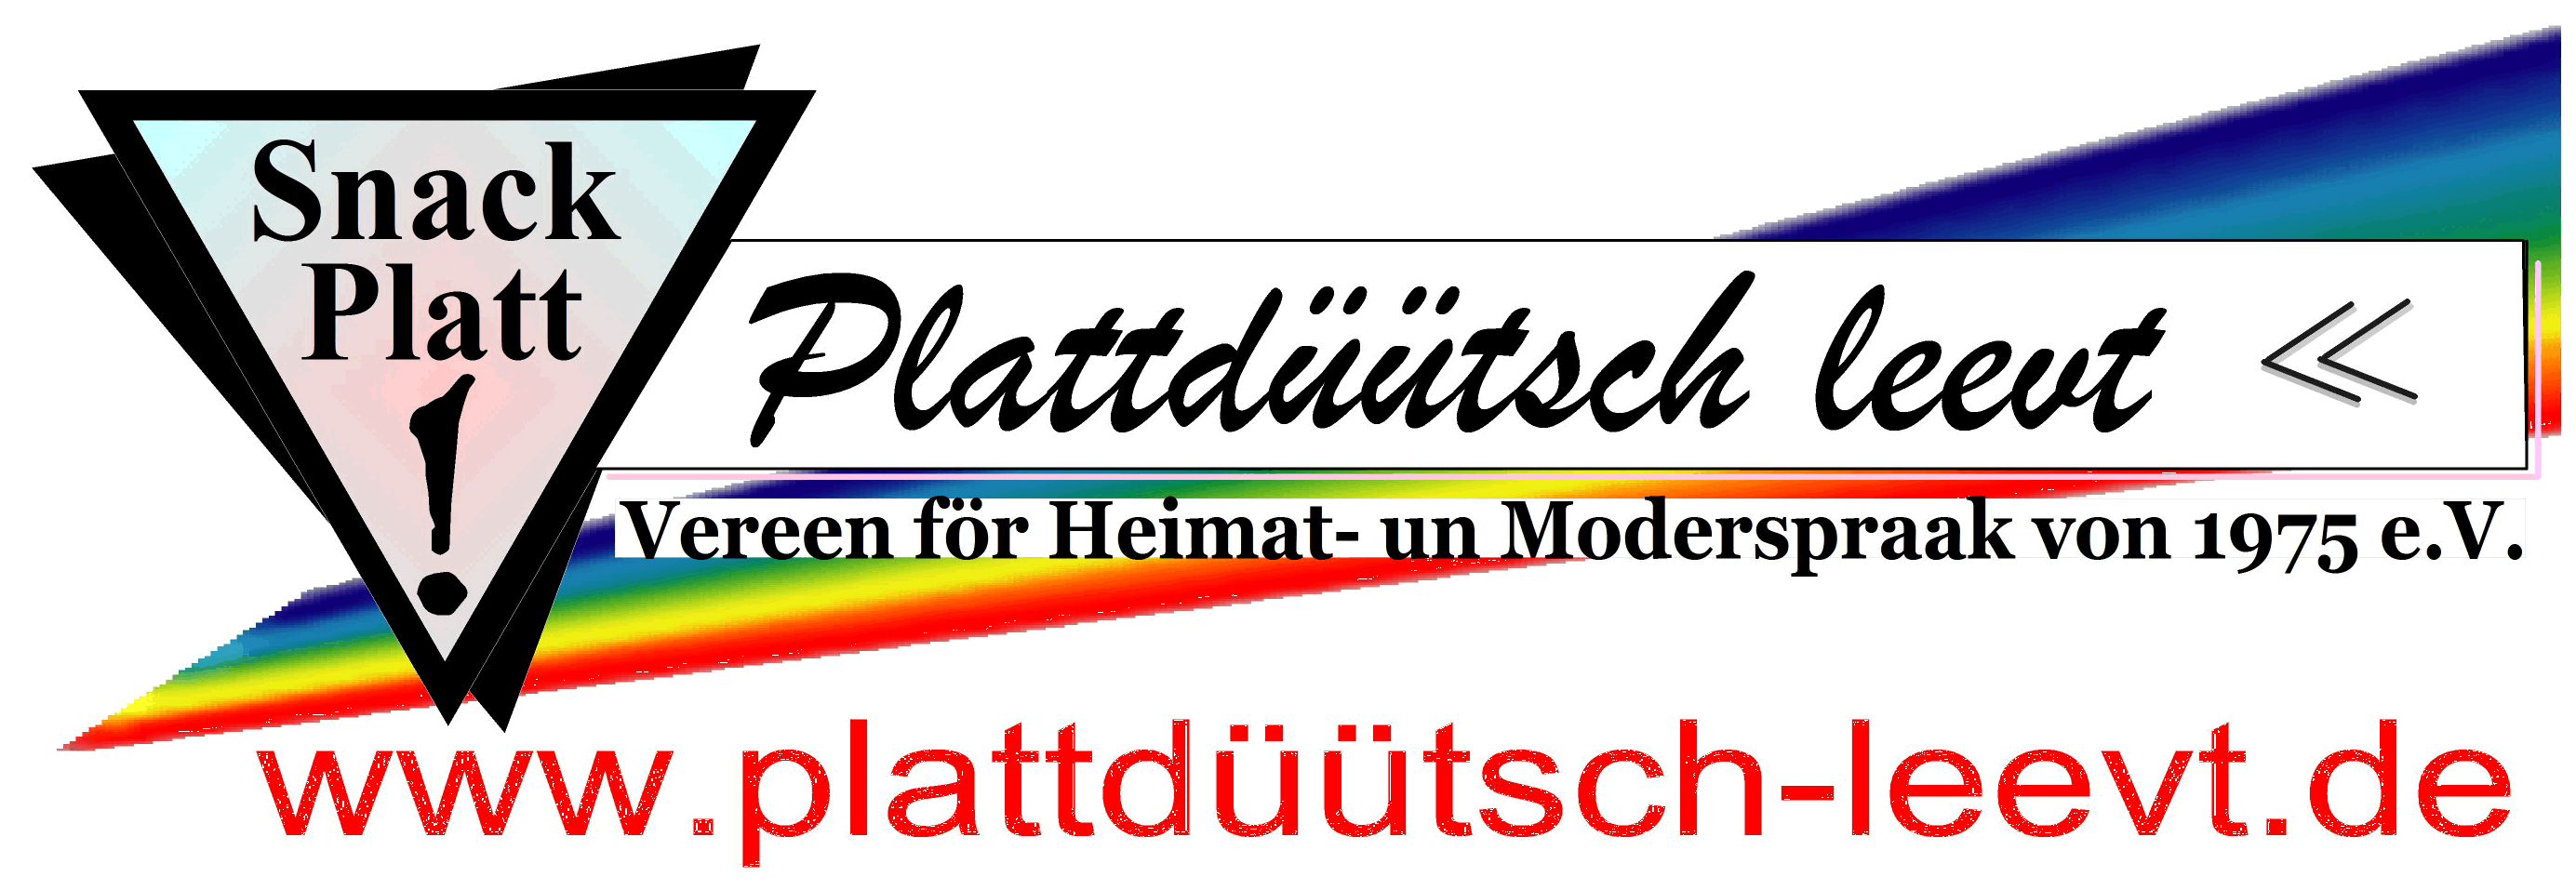 Plattdtsch leevt-Logo mit Internetseite